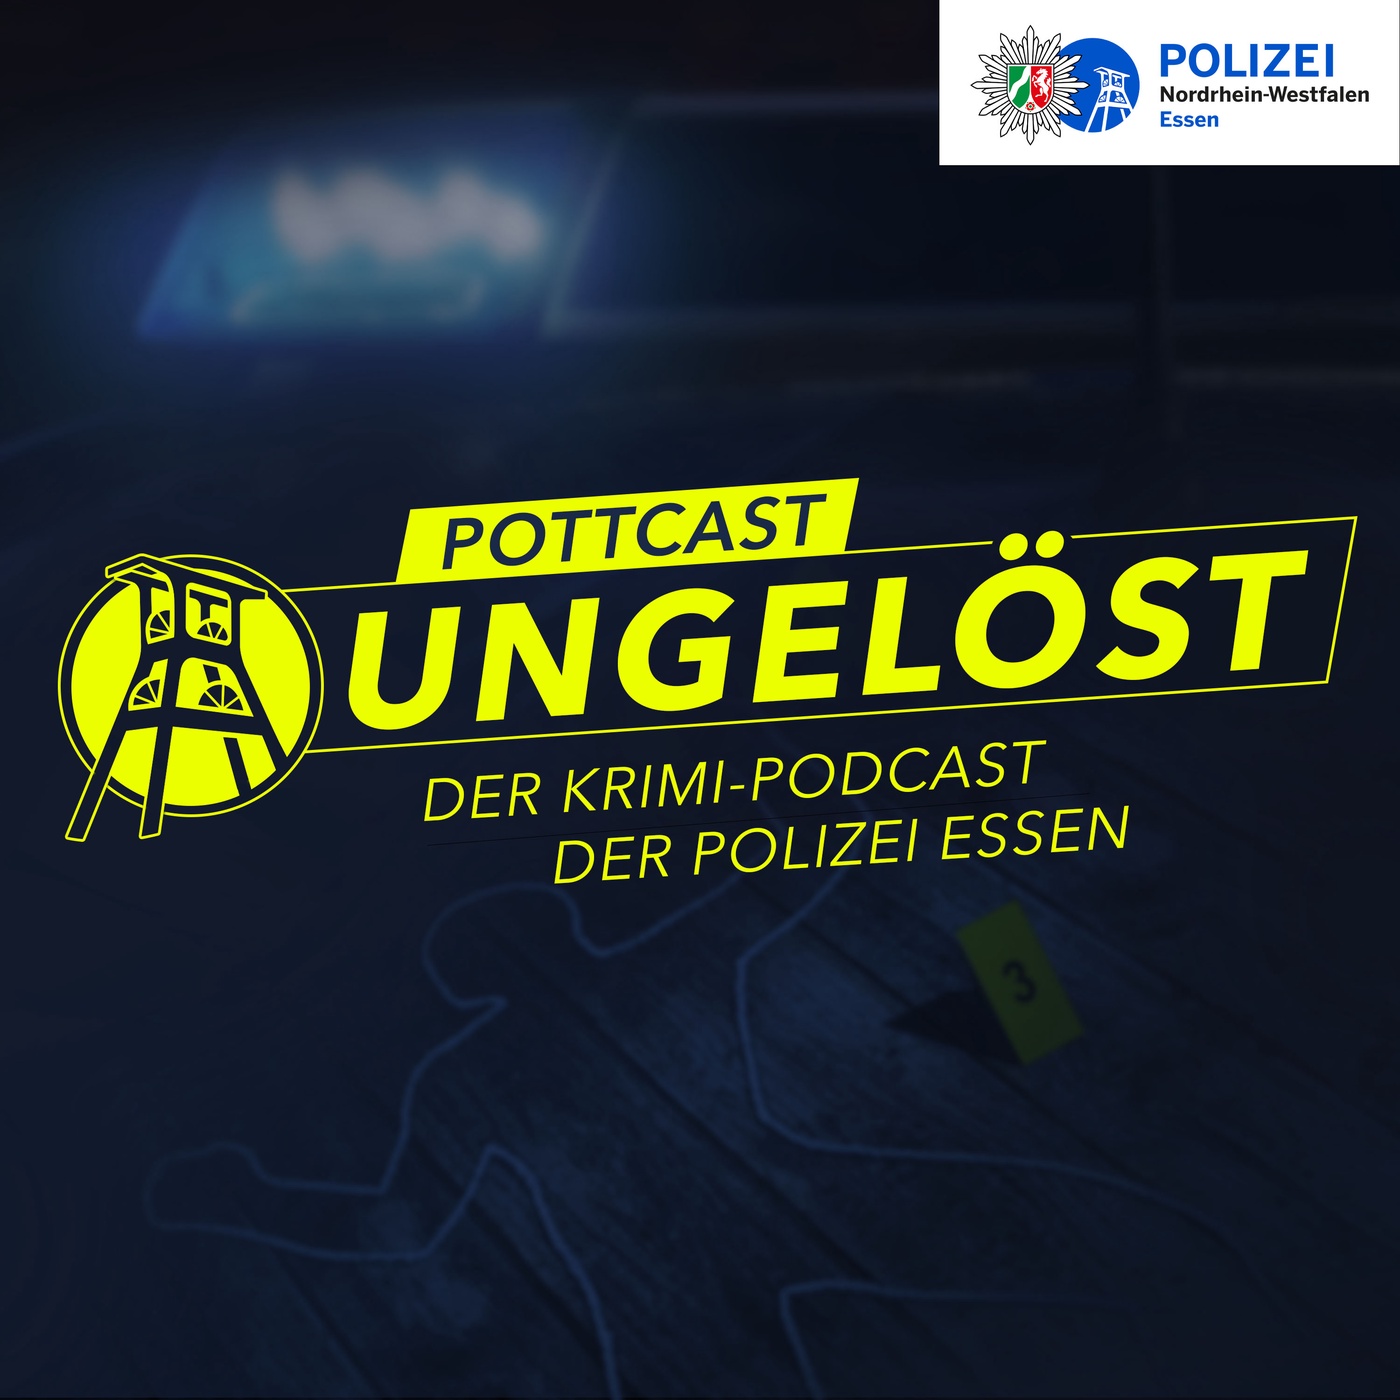 Pottcast Ungelöst - Der Krimi-Podcast der Polizei Essen